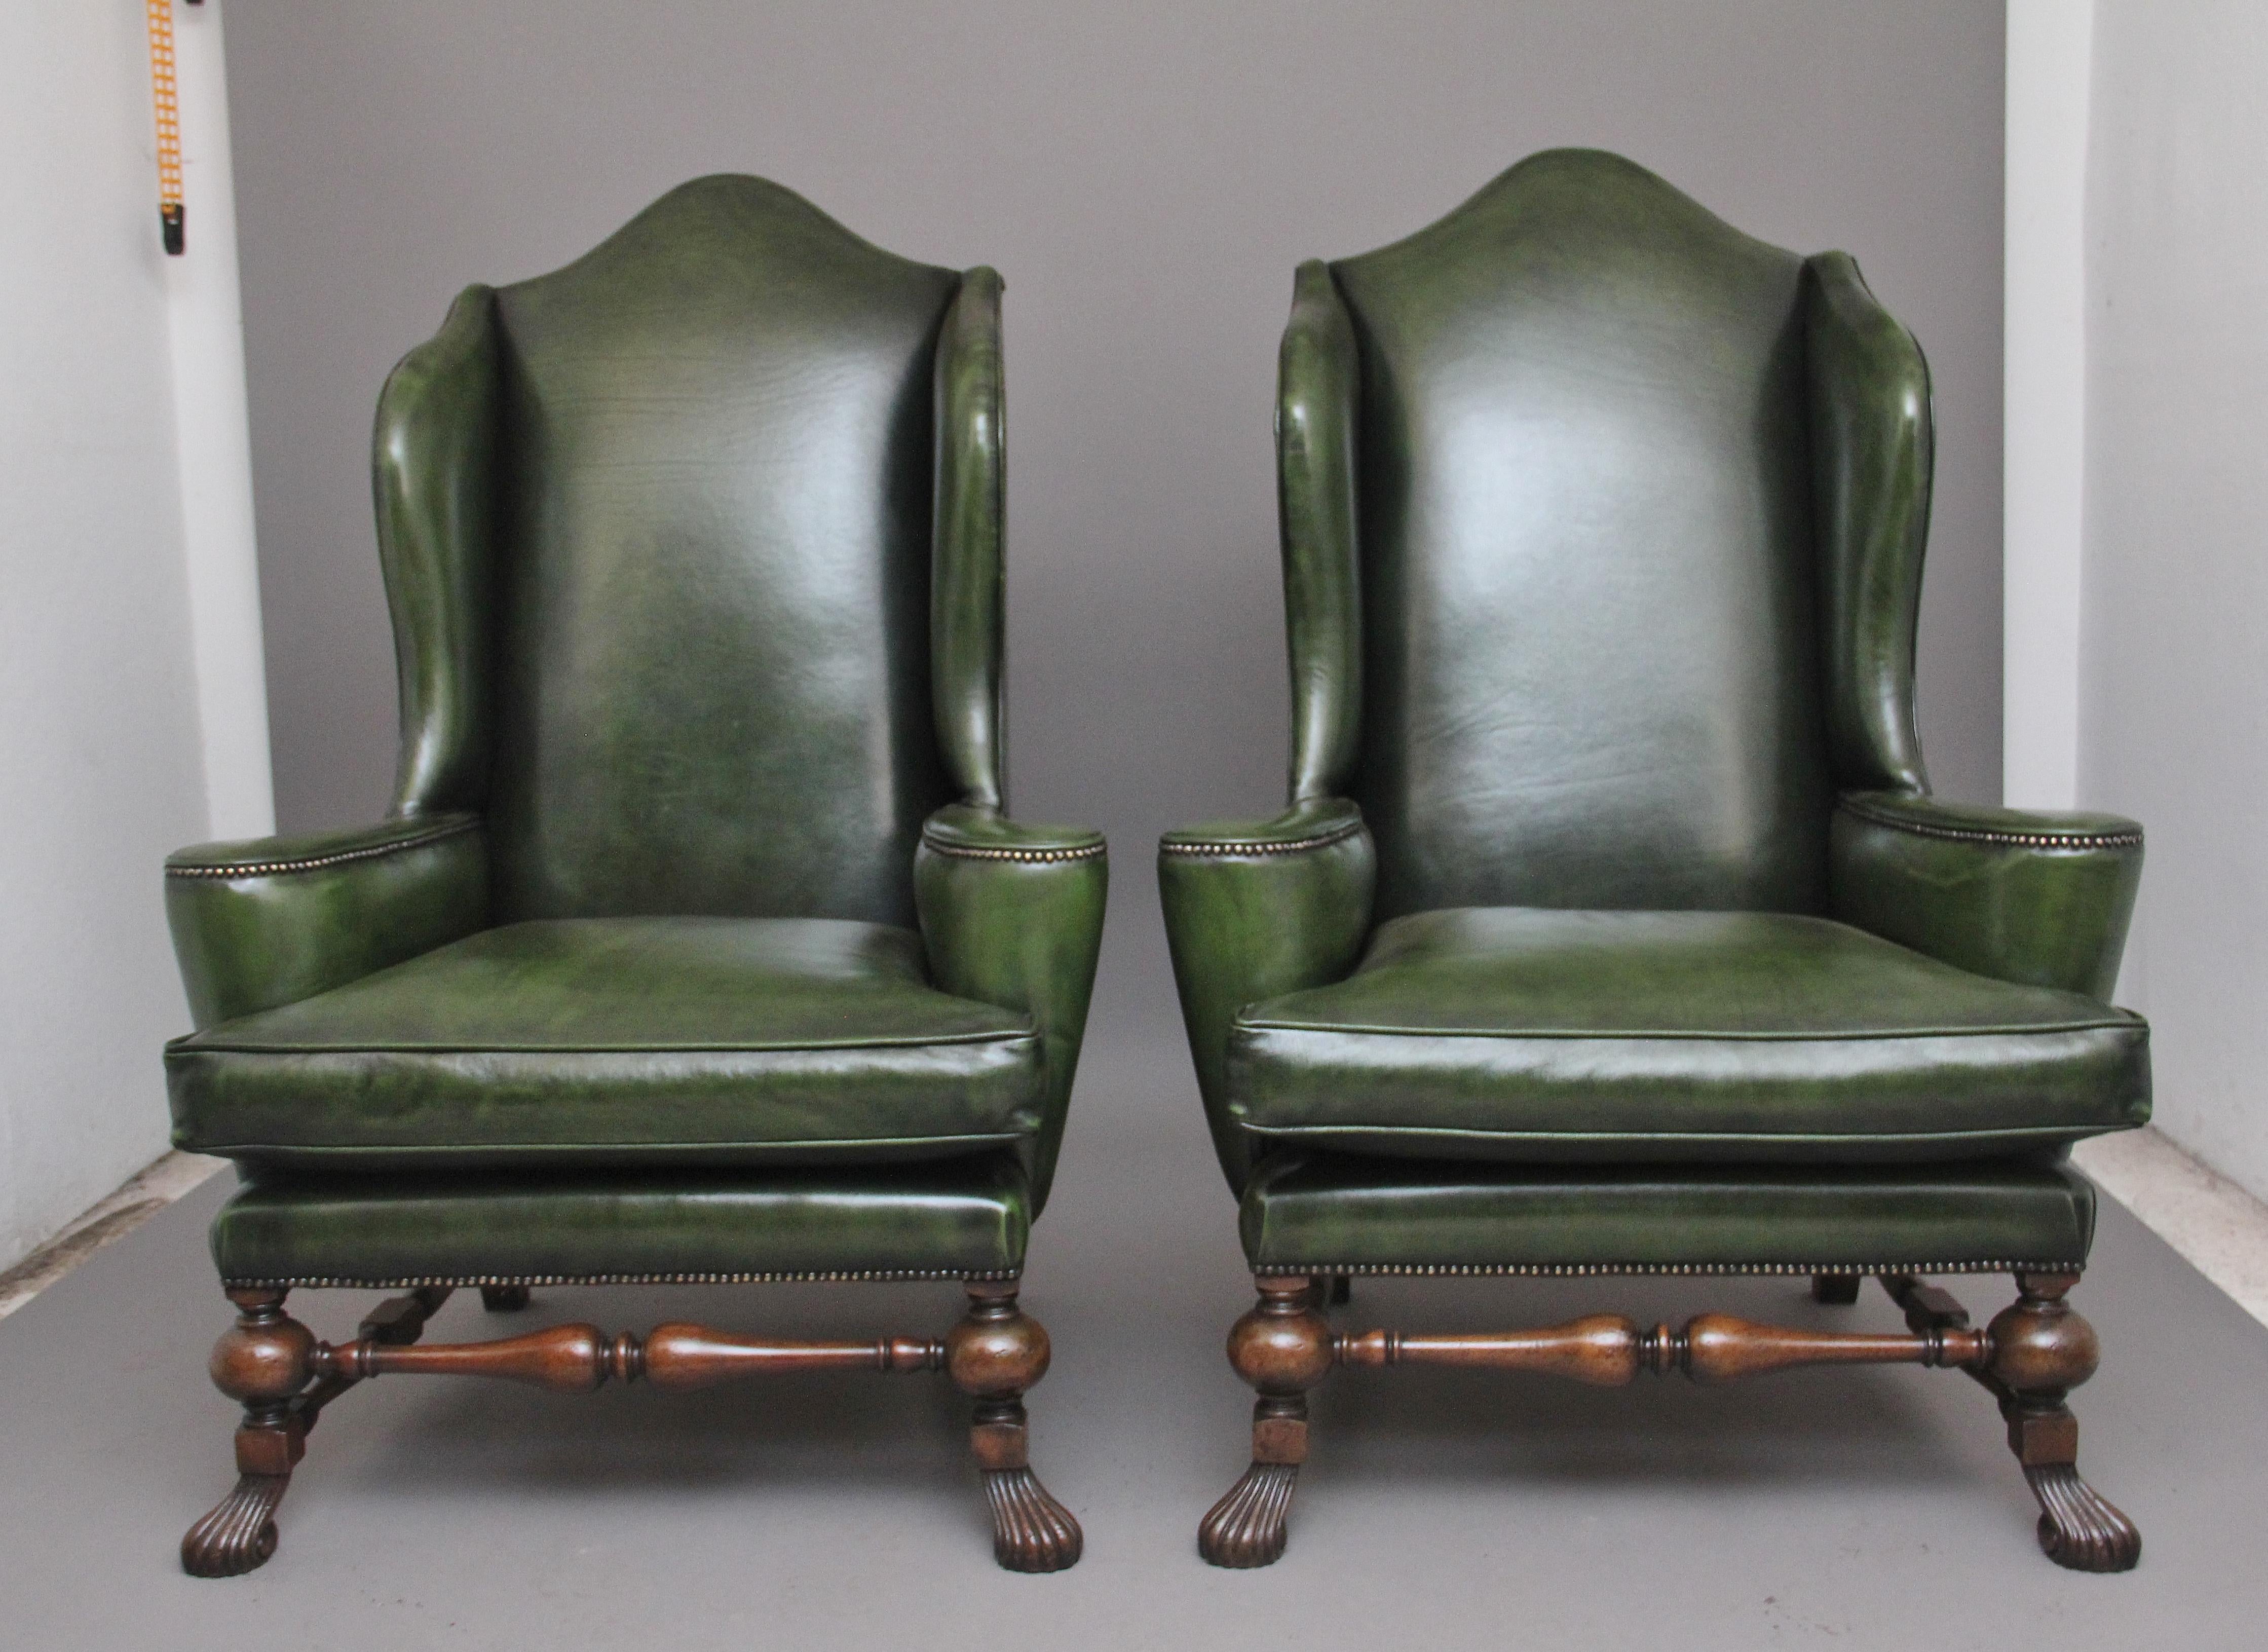 Une fabuleuse paire de grands fauteuils à oreilles en noyer du début du 19ème siècle, de style géorgien, qui viennent d'être retapissés en cuir vert avec une décoration de boutons en laiton, ayant un haut dossier façonné avec des côtés ailés